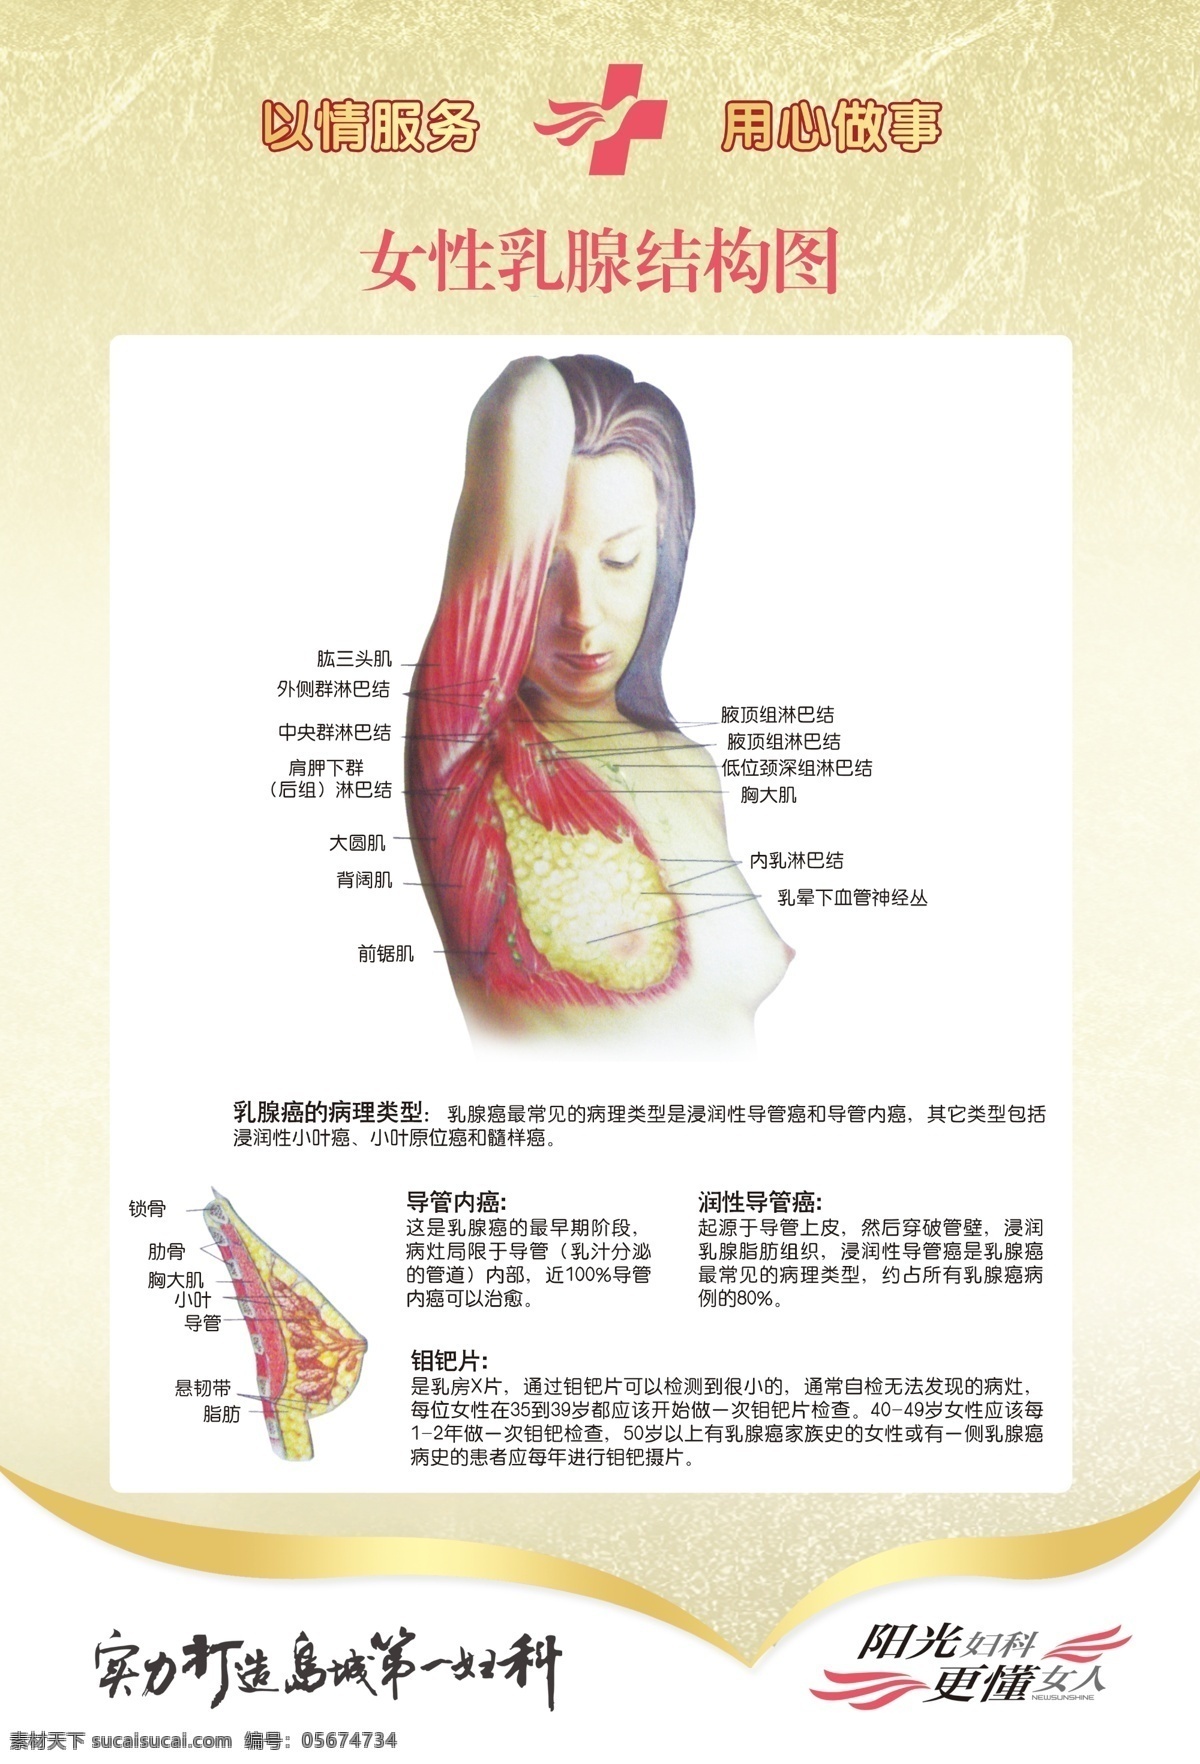 乳腺结构图 女性乳腺 乳腺 乳房结构图 乳房 医院 女性 展板模板 广告设计模板 源文件